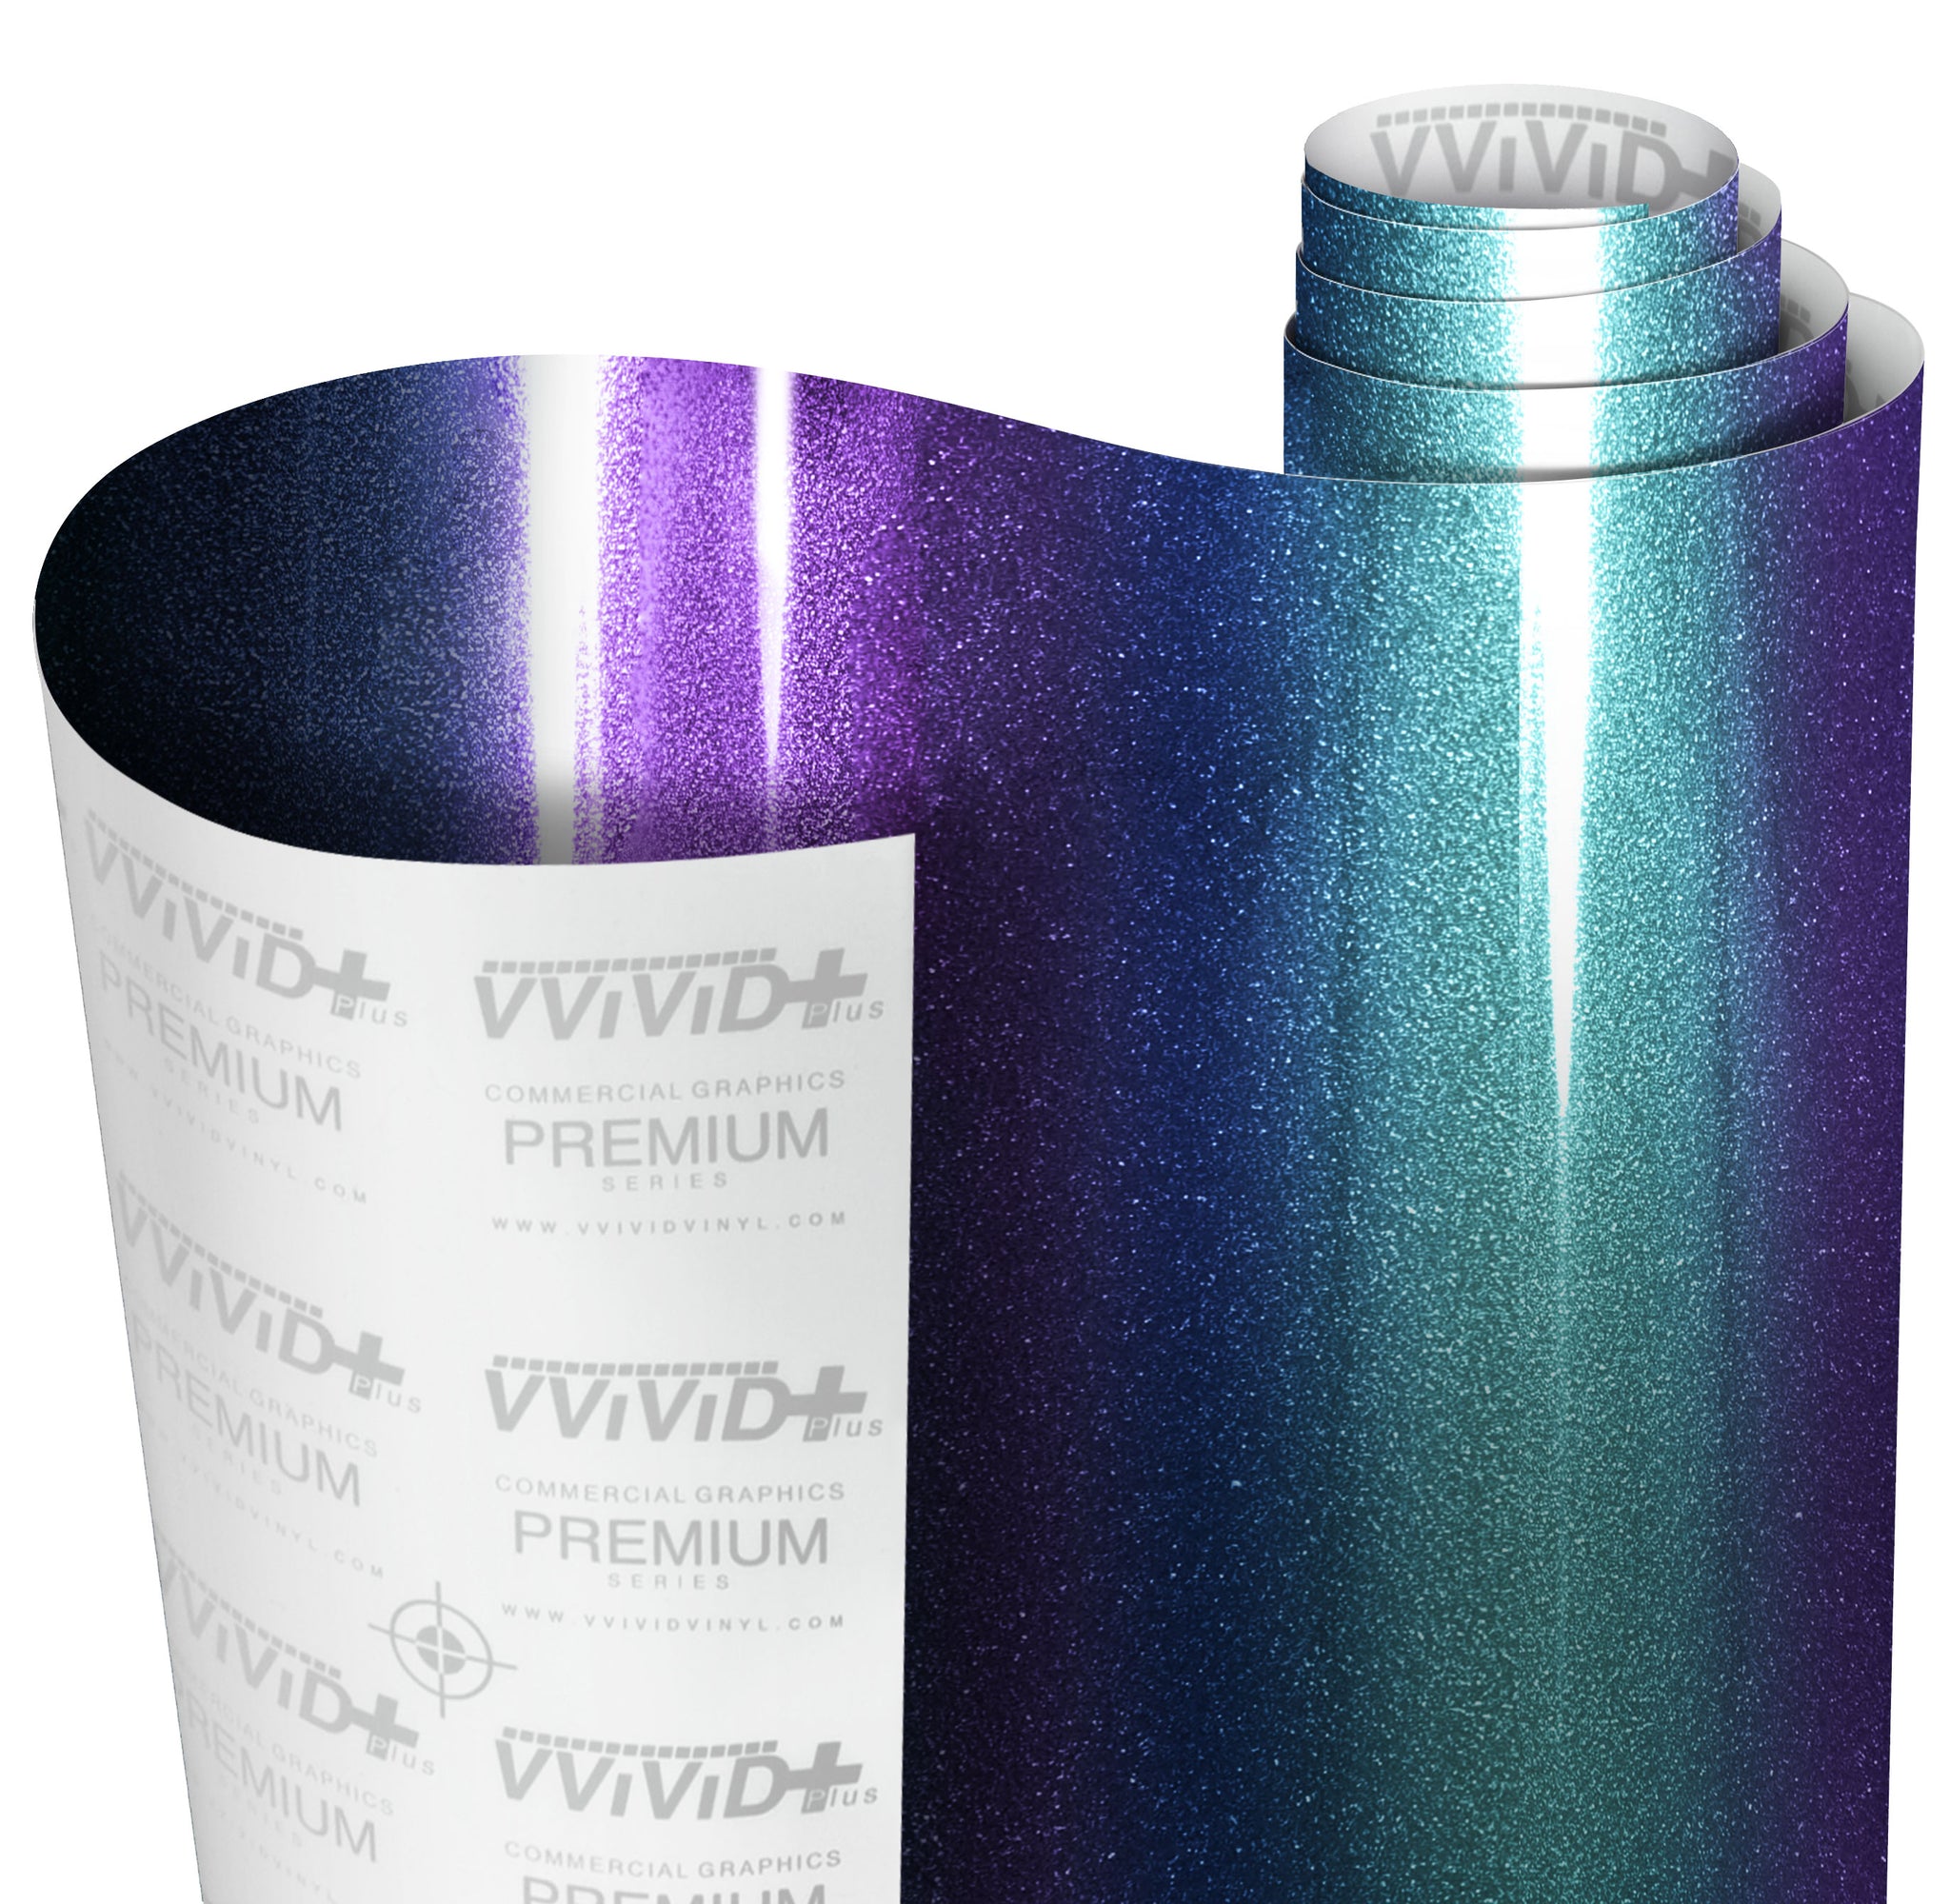 VViViD+ Metallic Chameleon (Blue to Purple) | The VViViD